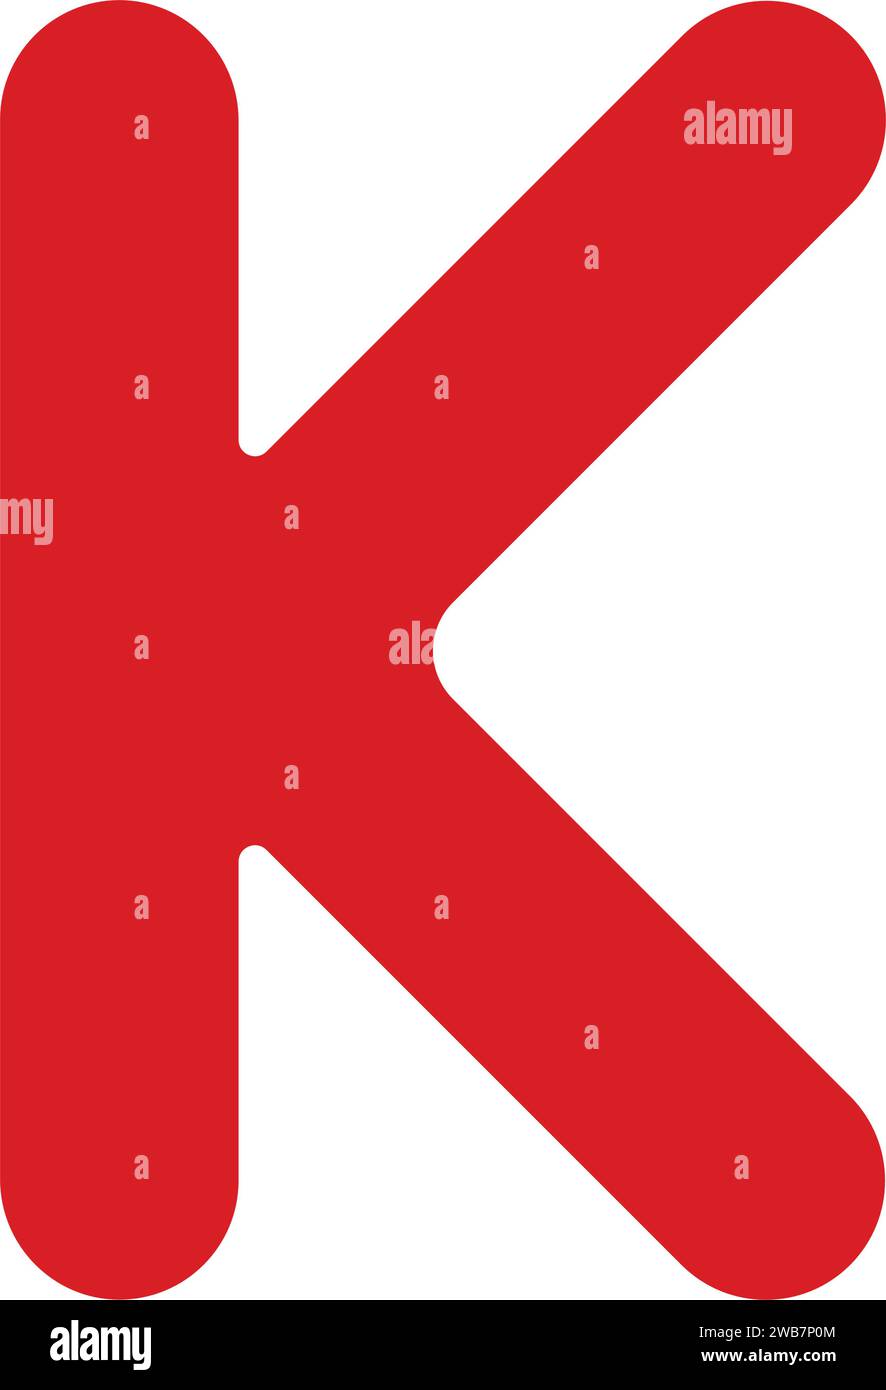 letter k logo icon vector illustration design Stock Vector